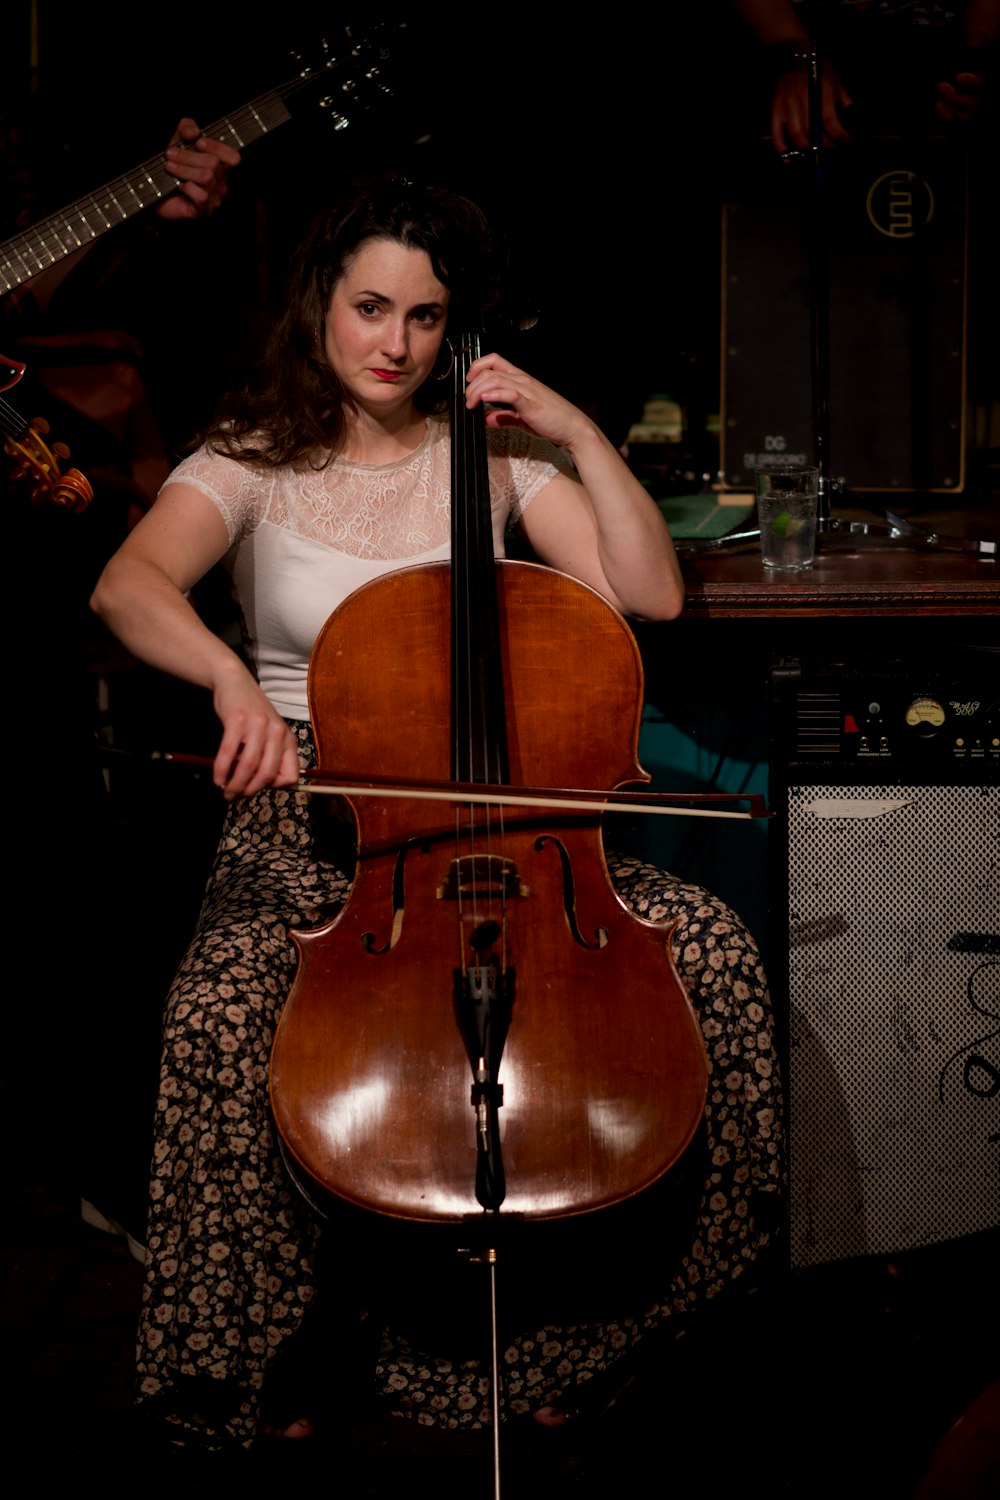 Une femme assise sur un tabouret jouant du violoncelle